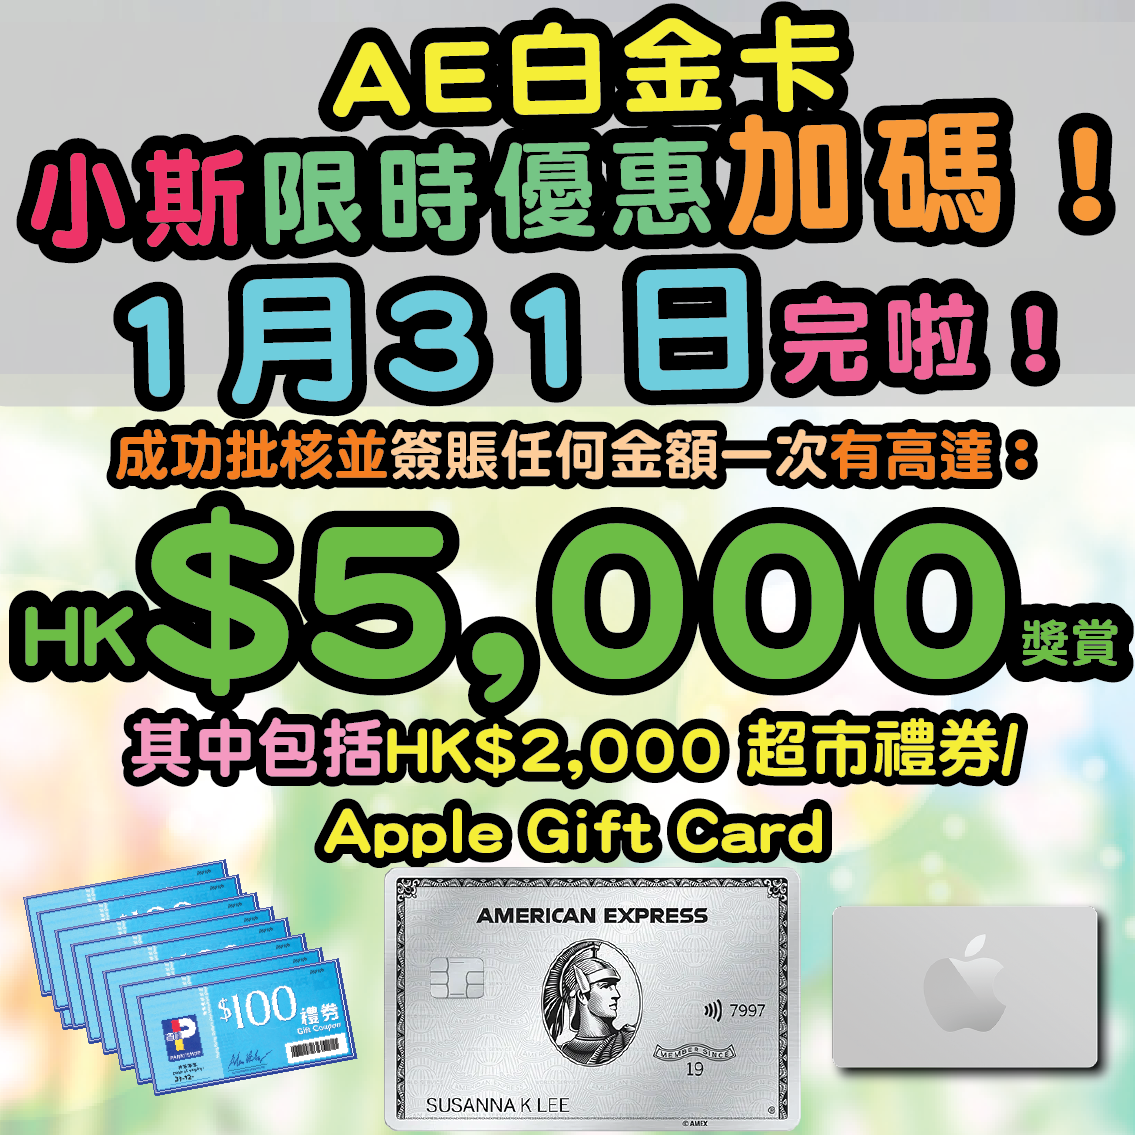 【🔥🔥🔥小斯限時優惠加碼】小斯成功申請美國運通白金卡(細頭)，簽賬任何金額一次有額外高達HK$5,000！